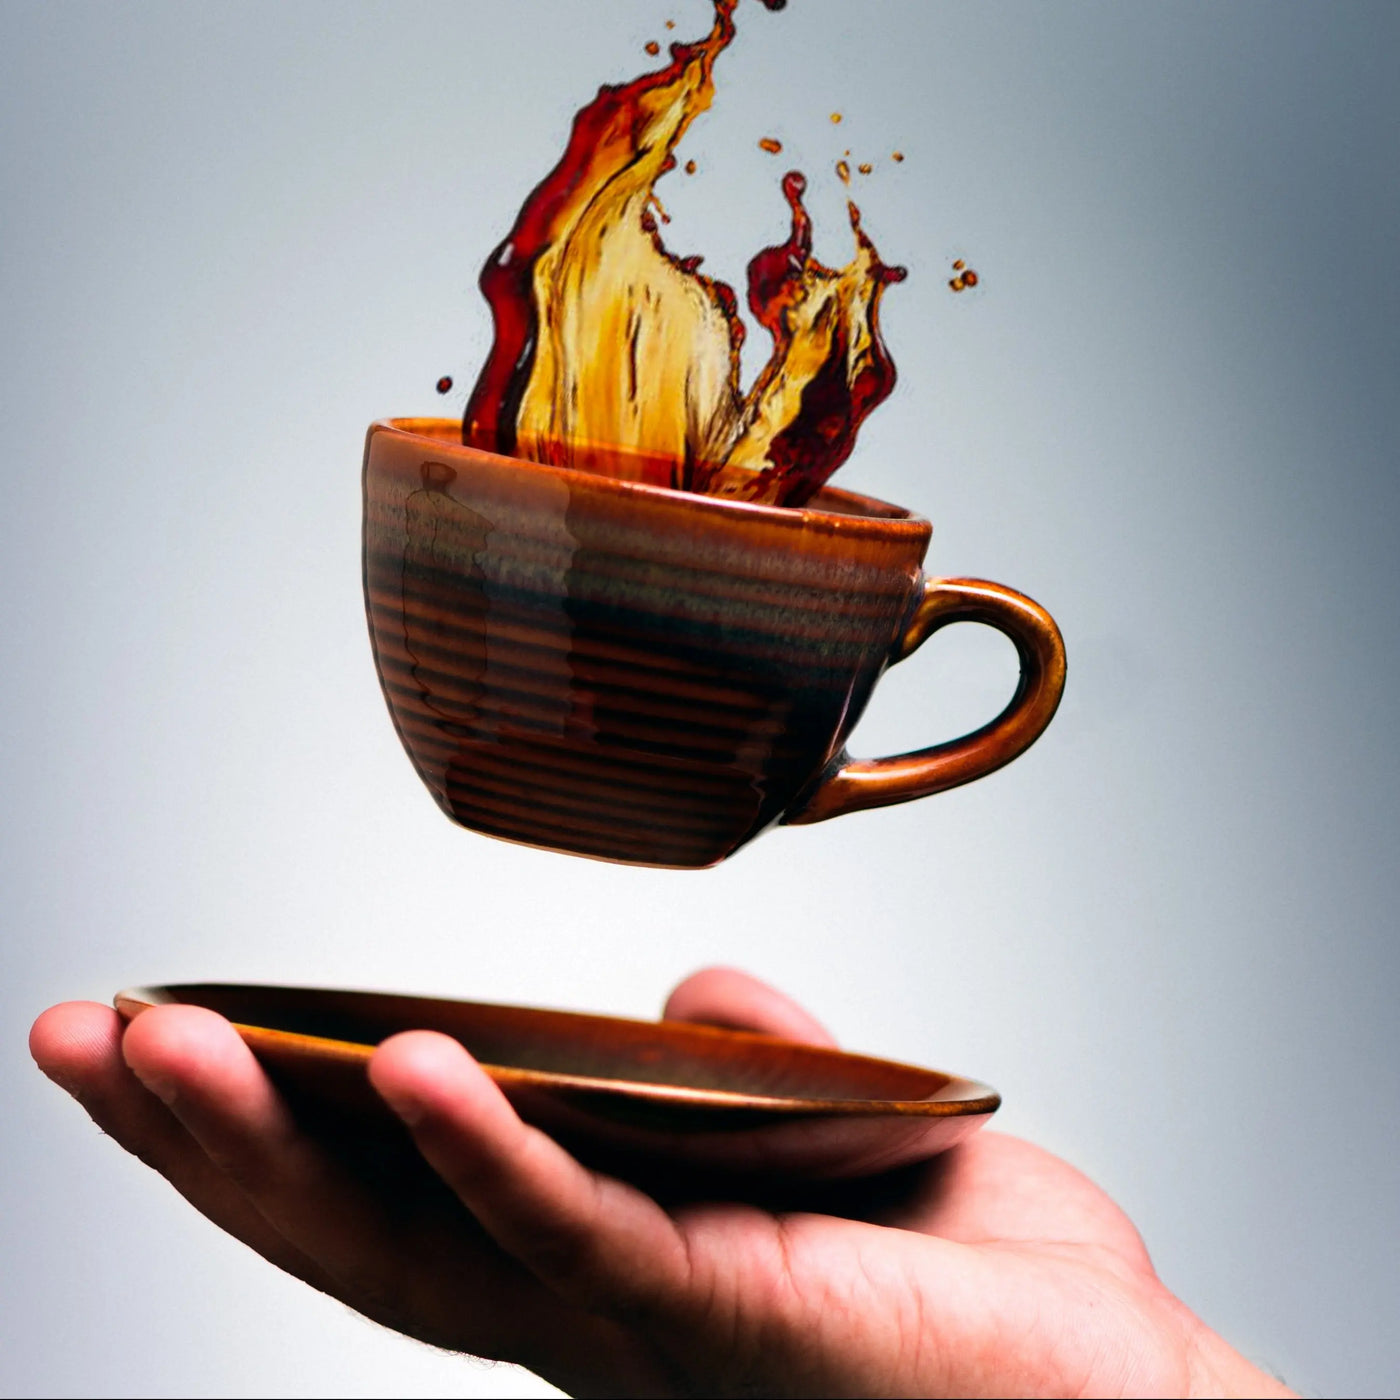 Vriksh Ceramic Tea Cup and Saucer Set of 4 Amalfiee_Ceramics